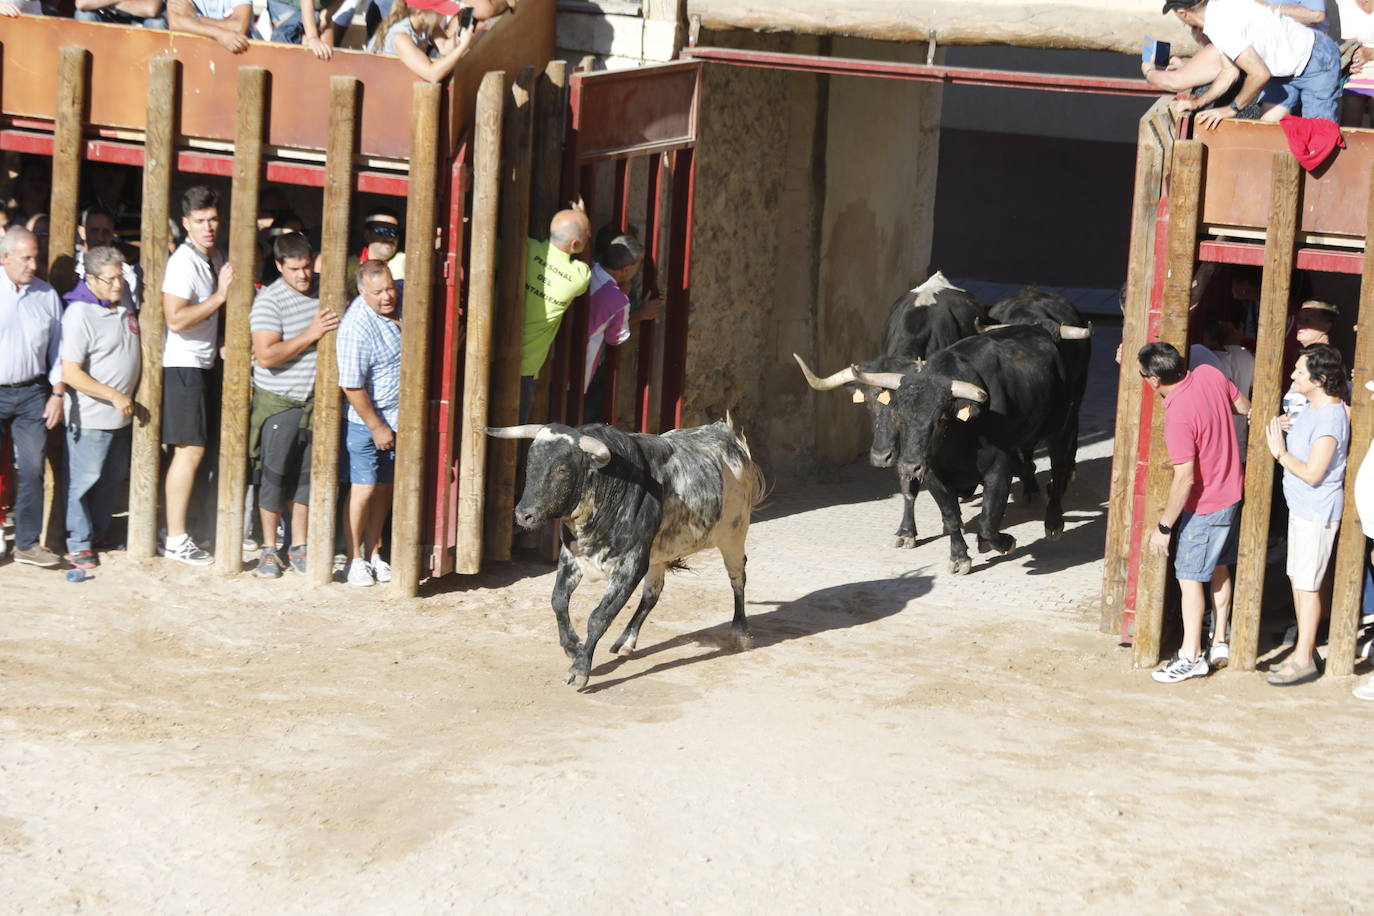 Esta mañana se ha celebrado el primer encierro de las fiestas de la localidad vallisoletana, seguido de tradicional capea. En este primer enchiqueramiento han participado seis toros acompañados de un grupo de mansos.